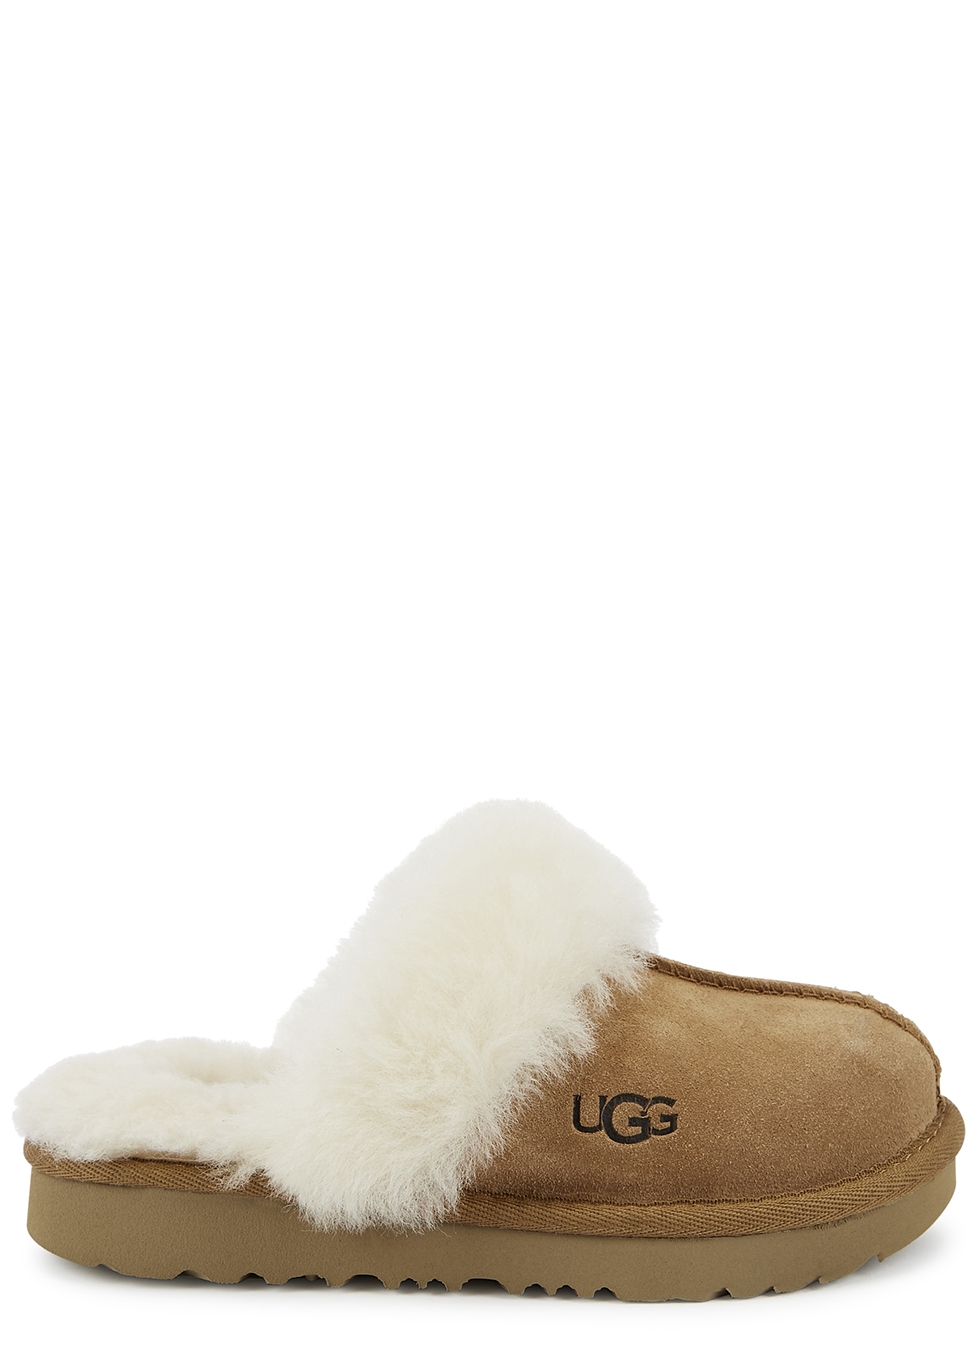 UGG KIDS Cosy II brown suede slippers - Harvey Nichols